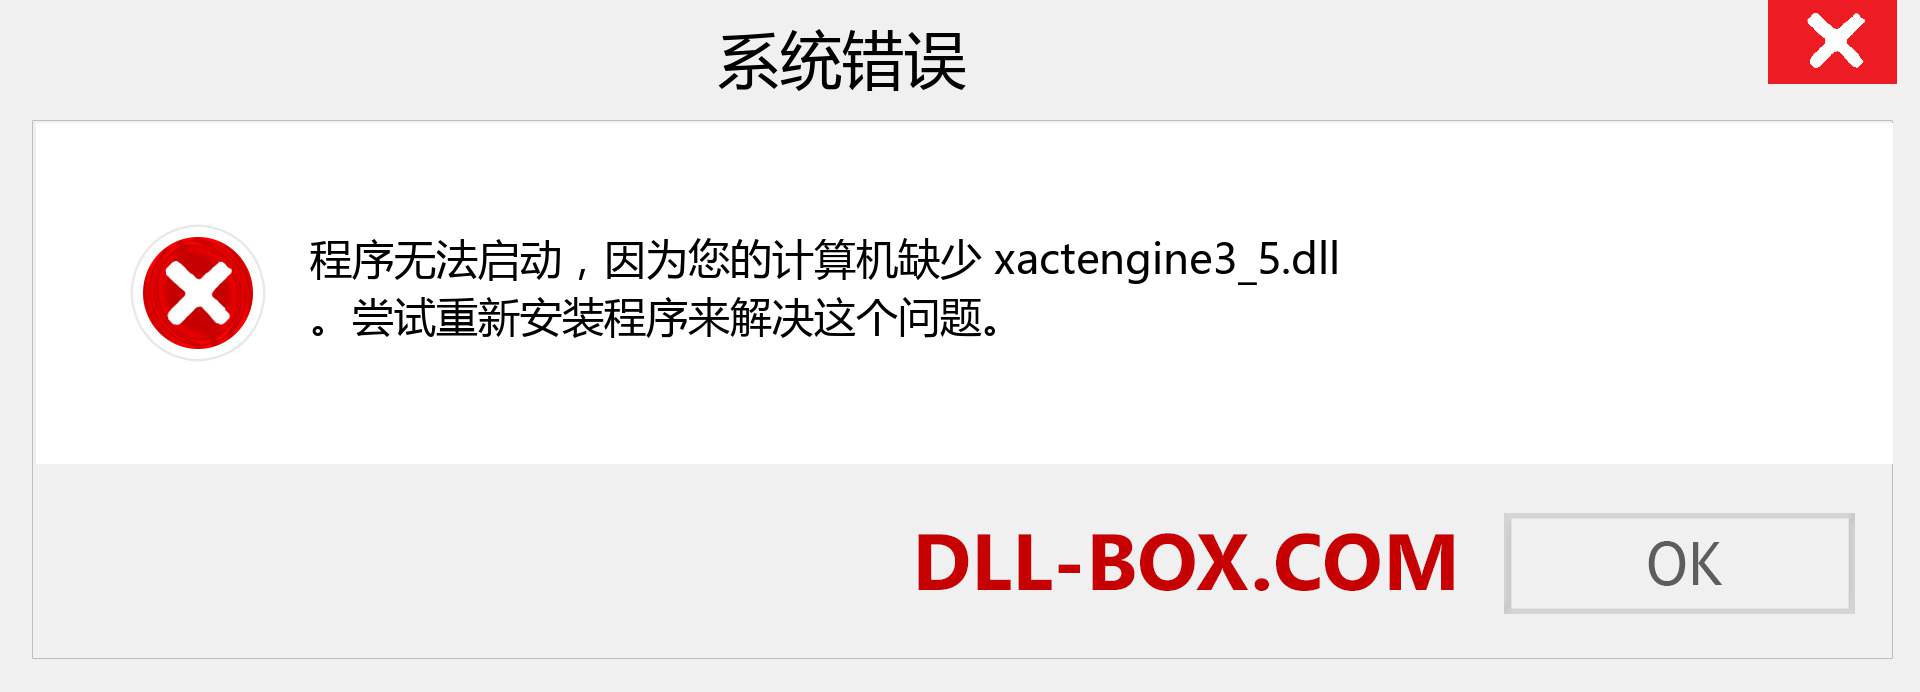 xactengine3_5.dll 文件丢失？。 适用于 Windows 7、8、10 的下载 - 修复 Windows、照片、图像上的 xactengine3_5 dll 丢失错误